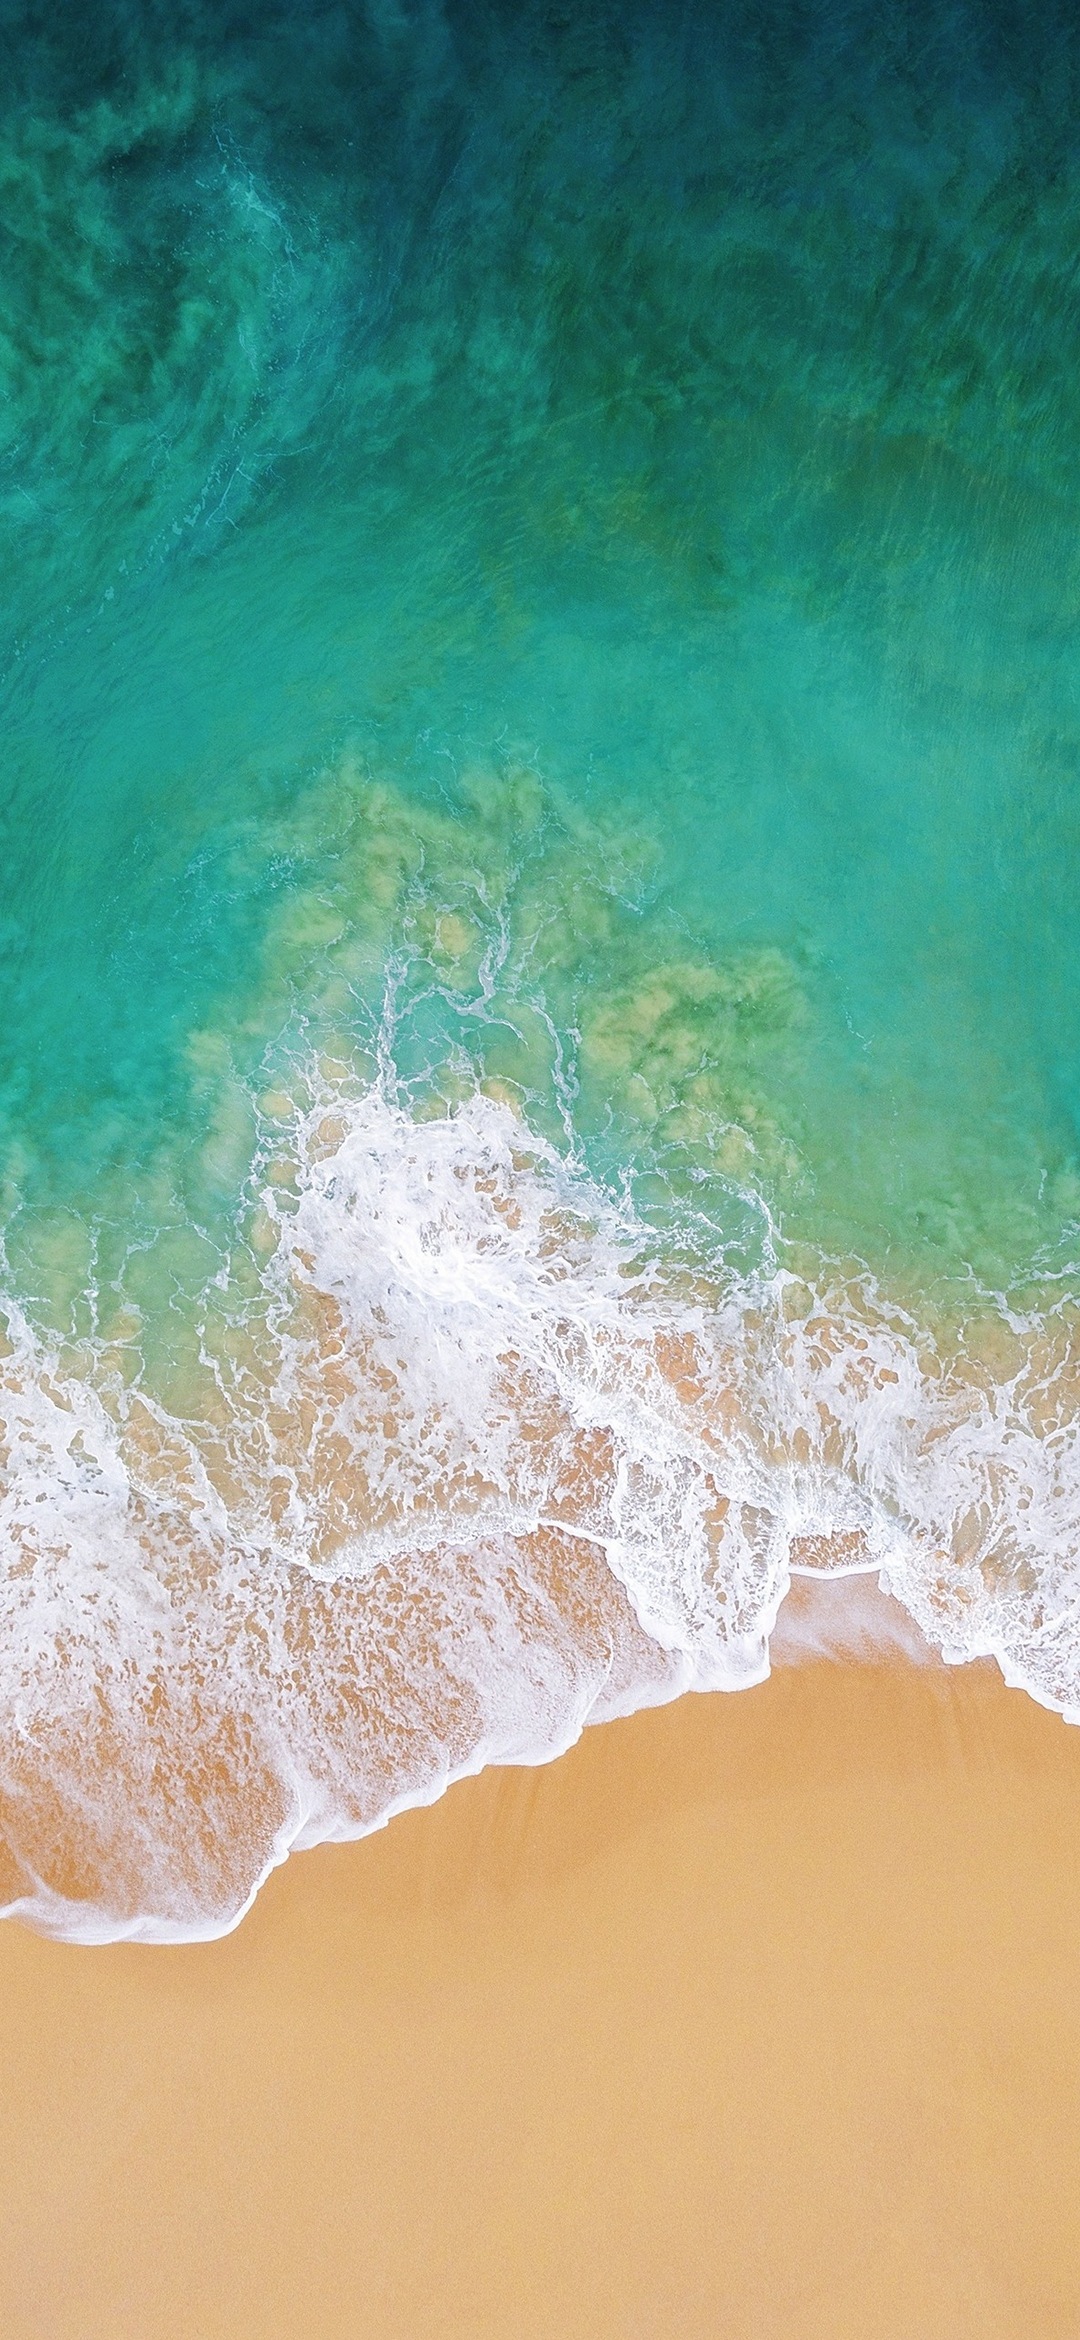 緑のグラデーションの海と砂浜 Iphone 12 Mini スマホ壁紙 待ち受け スマラン